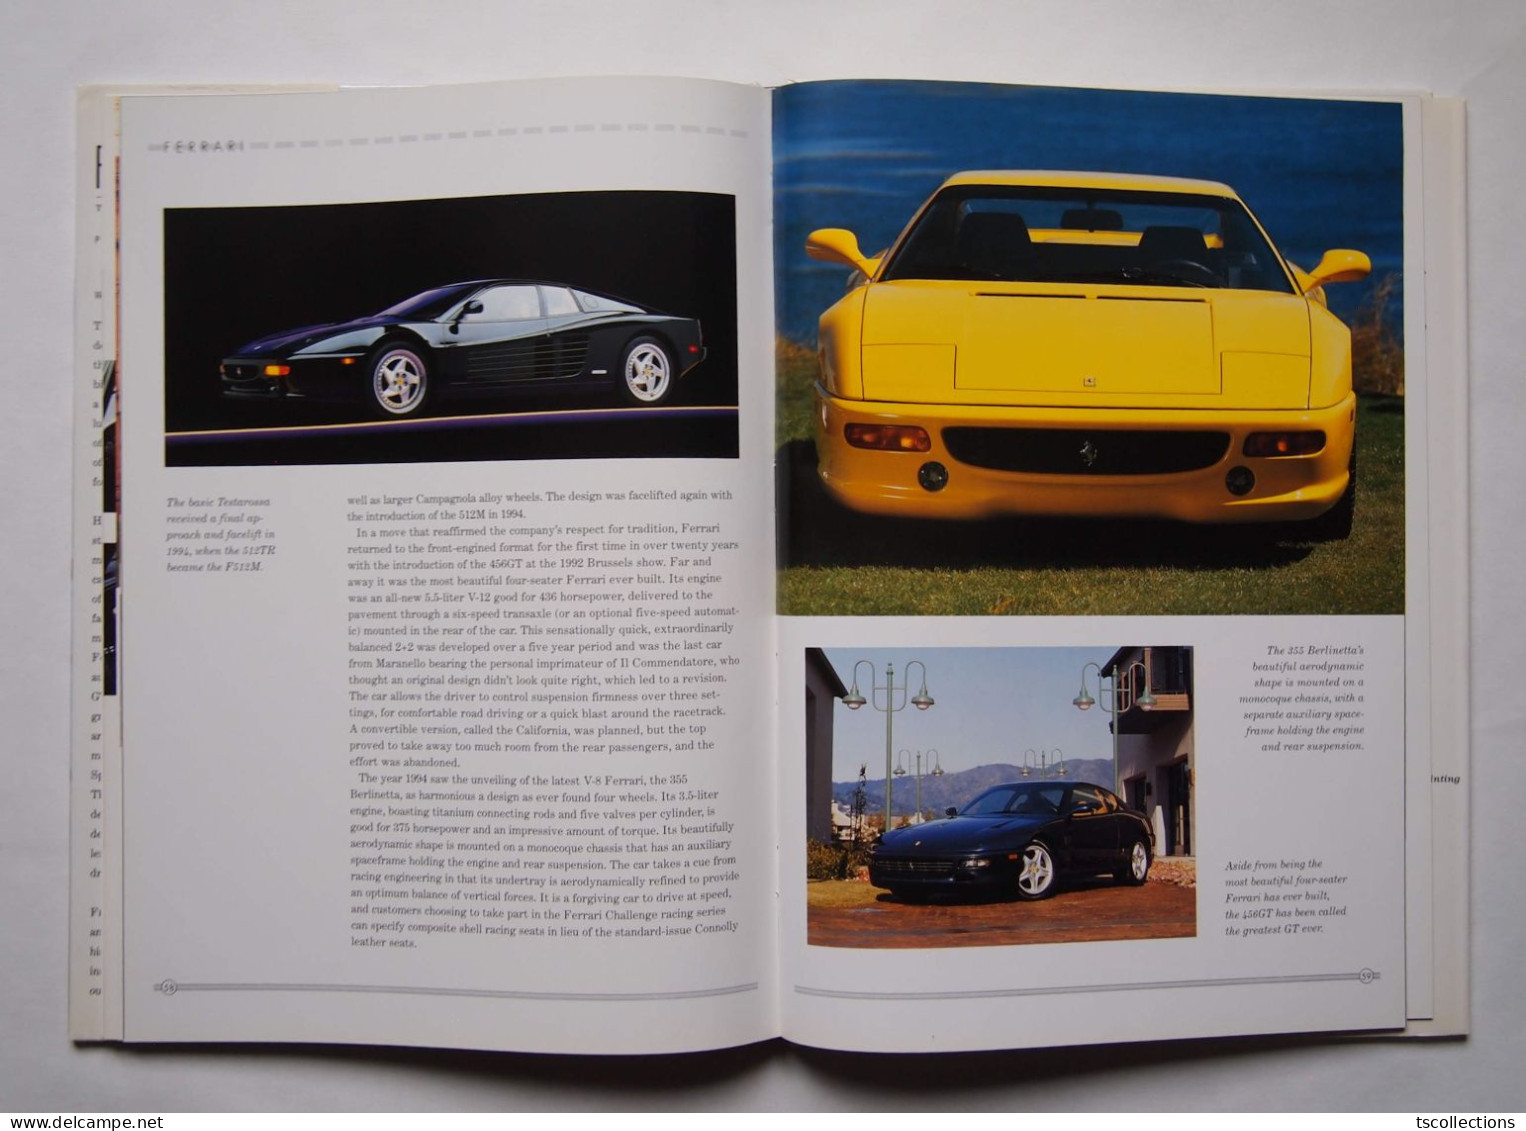 Ferrari The Ultimate Dream Machine - Libros Sobre Colecciones